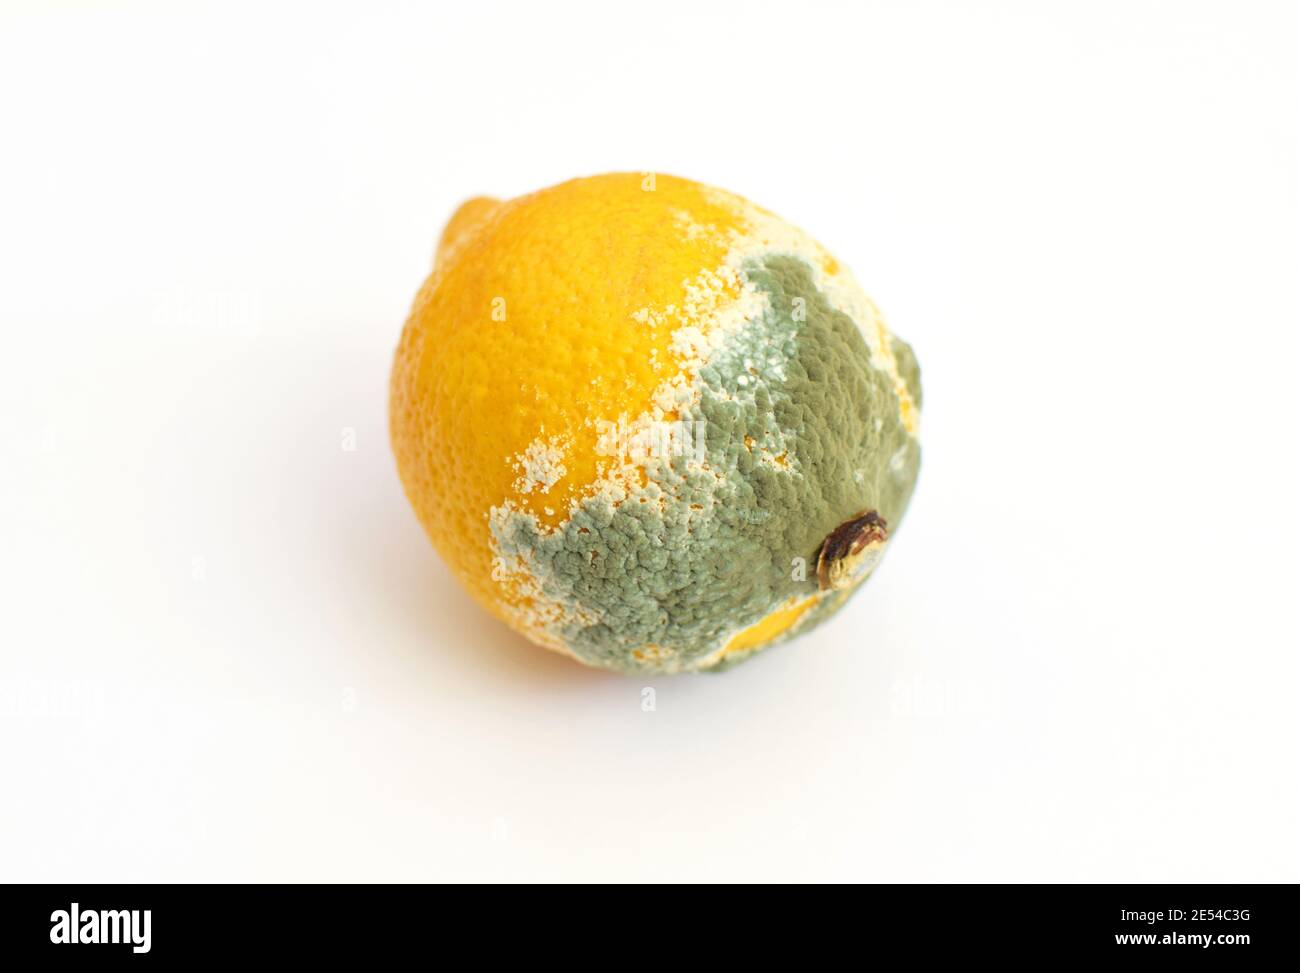 Moule bleu sur citron jaune. Fruits pourris avec moisissure sur fond blanc. Moule bleu-vert sur agrumes. Banque D'Images